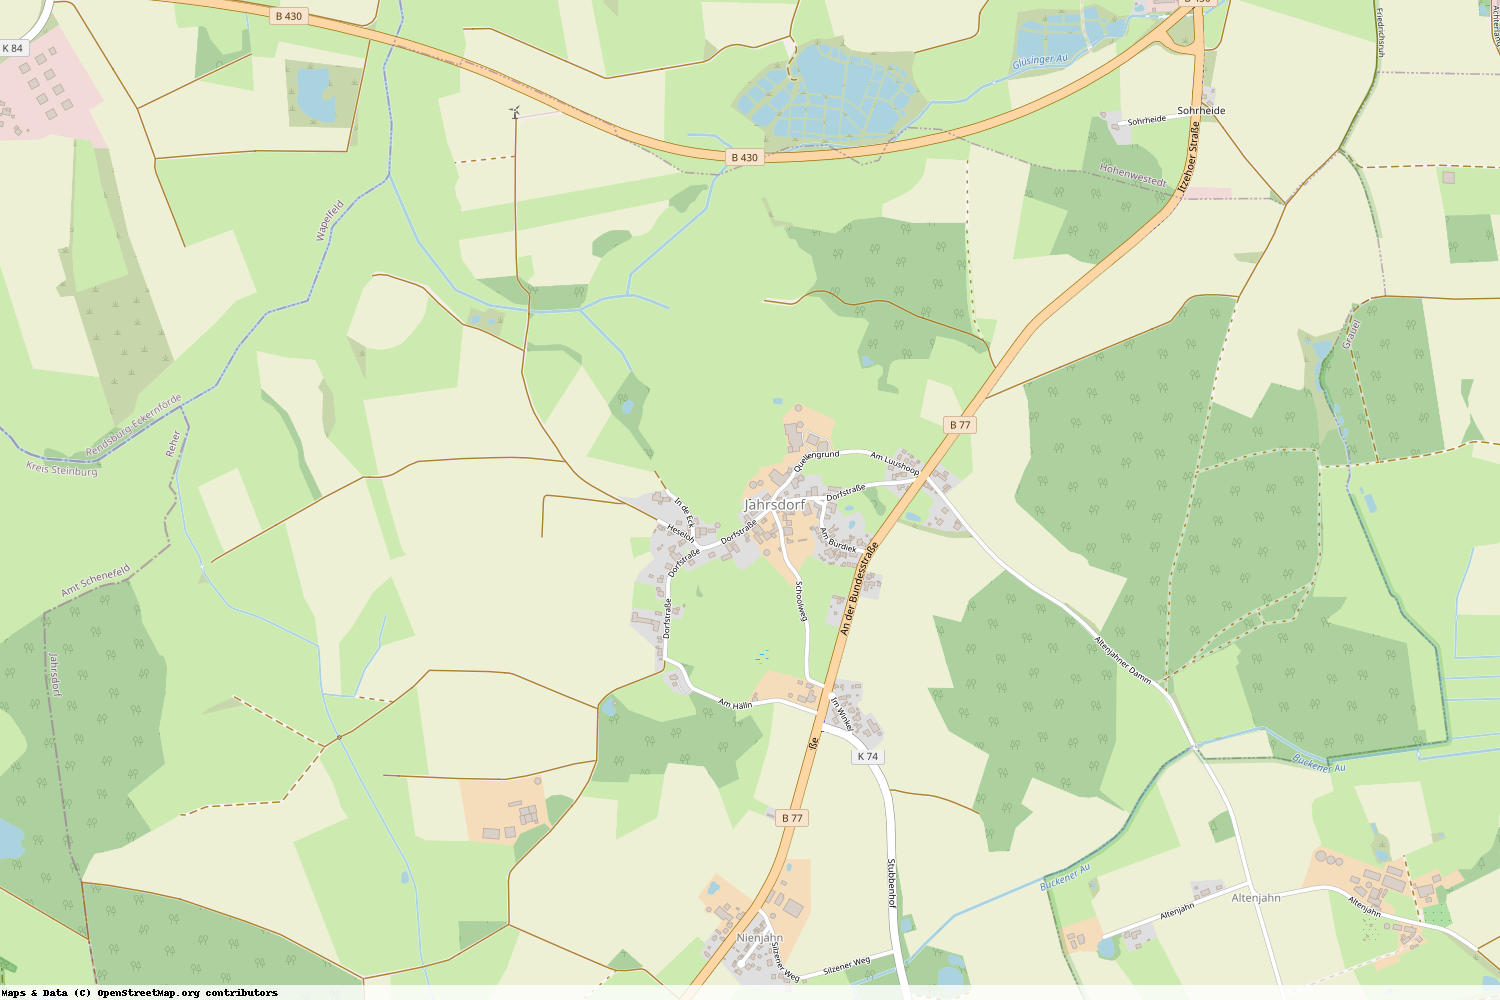 Ist gerade Stromausfall in Schleswig-Holstein - Rendsburg-Eckernförde - Jahrsdorf?